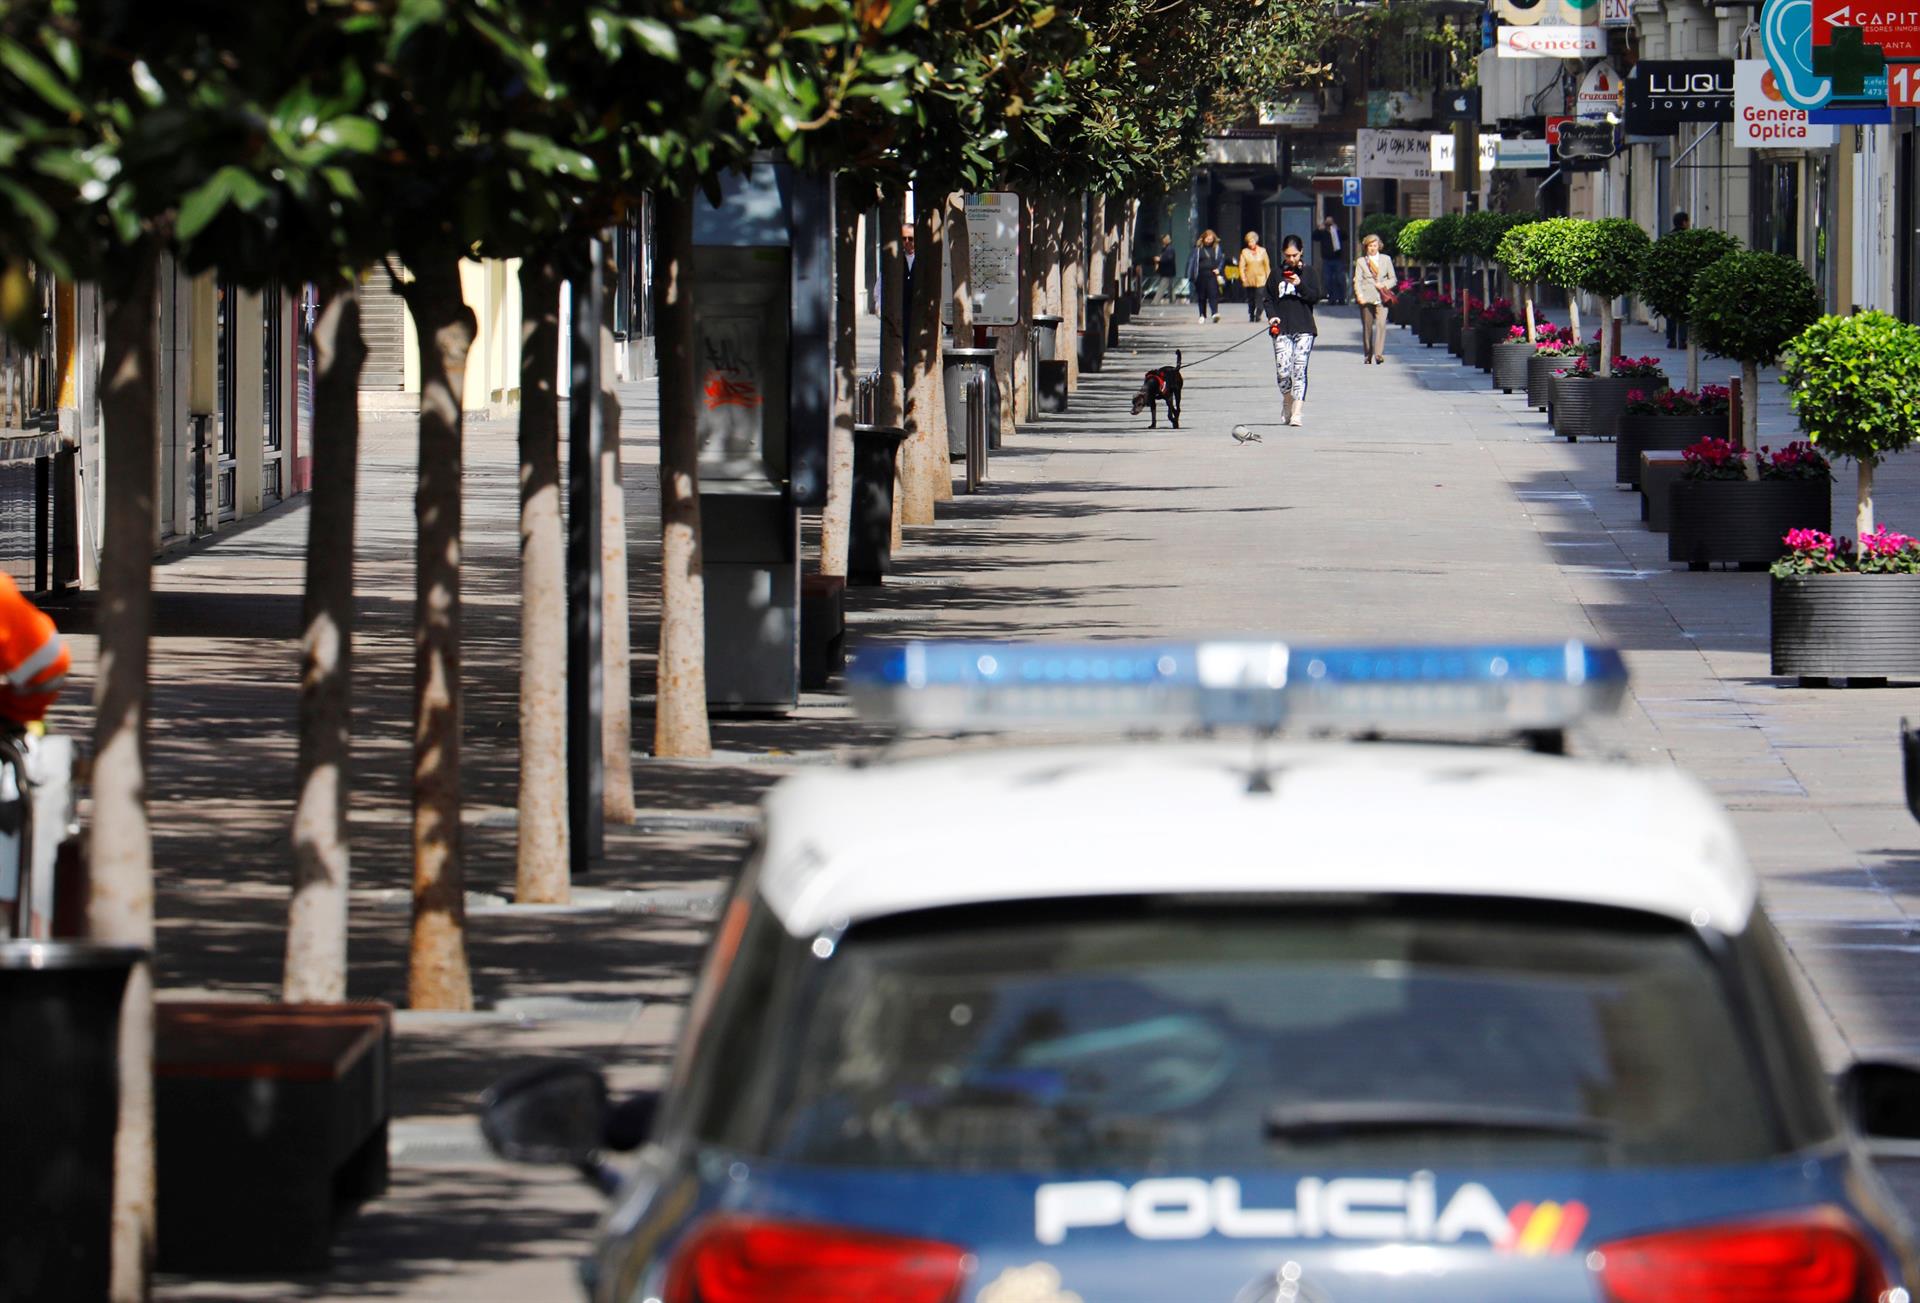 Detenido en Cullera un hombre fugado que embistió a una patrulla policial en su huida